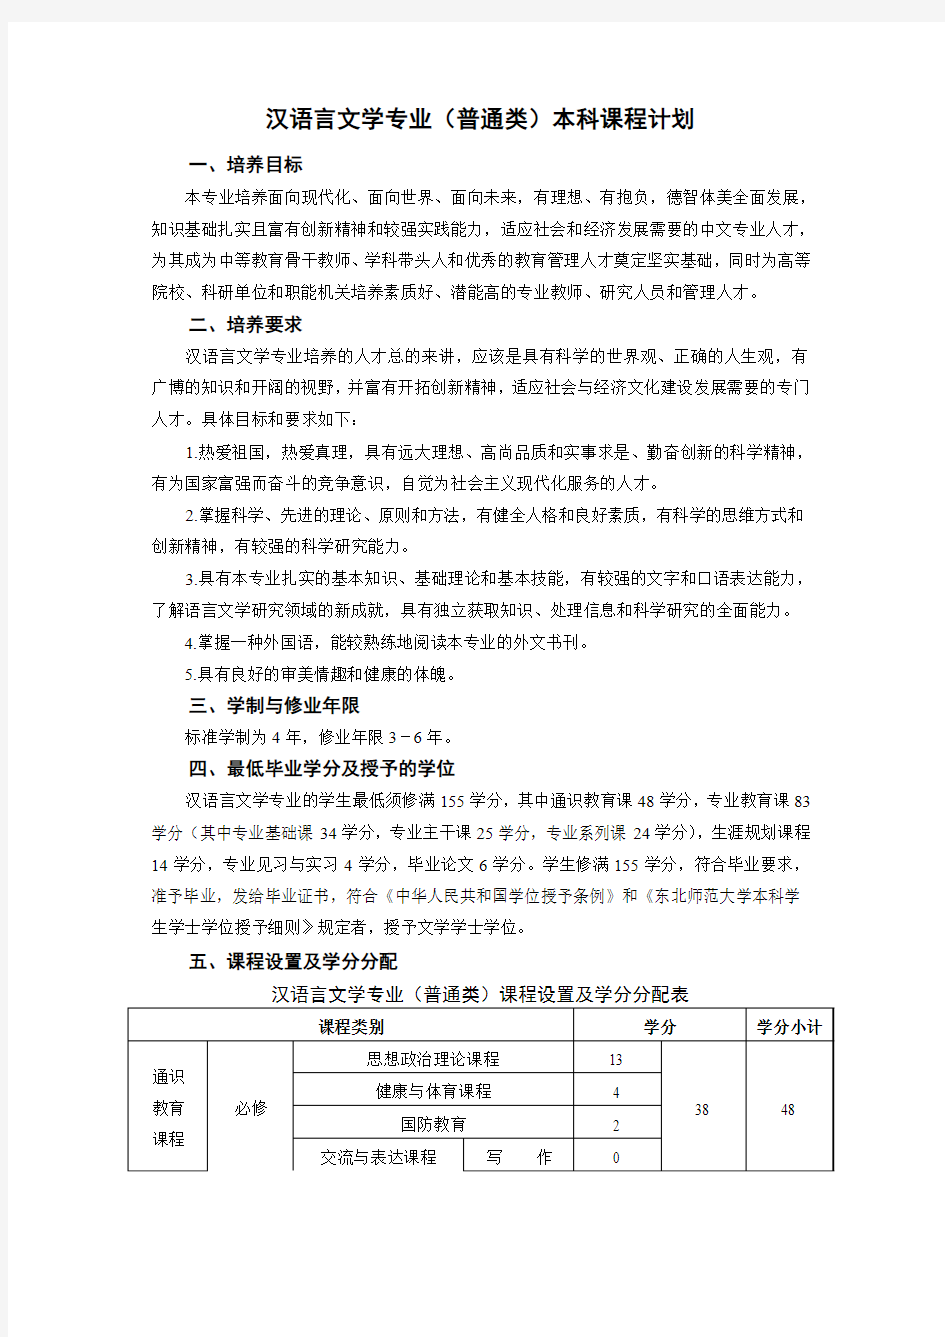 汉语言文学专业(普通类)本科课程计划